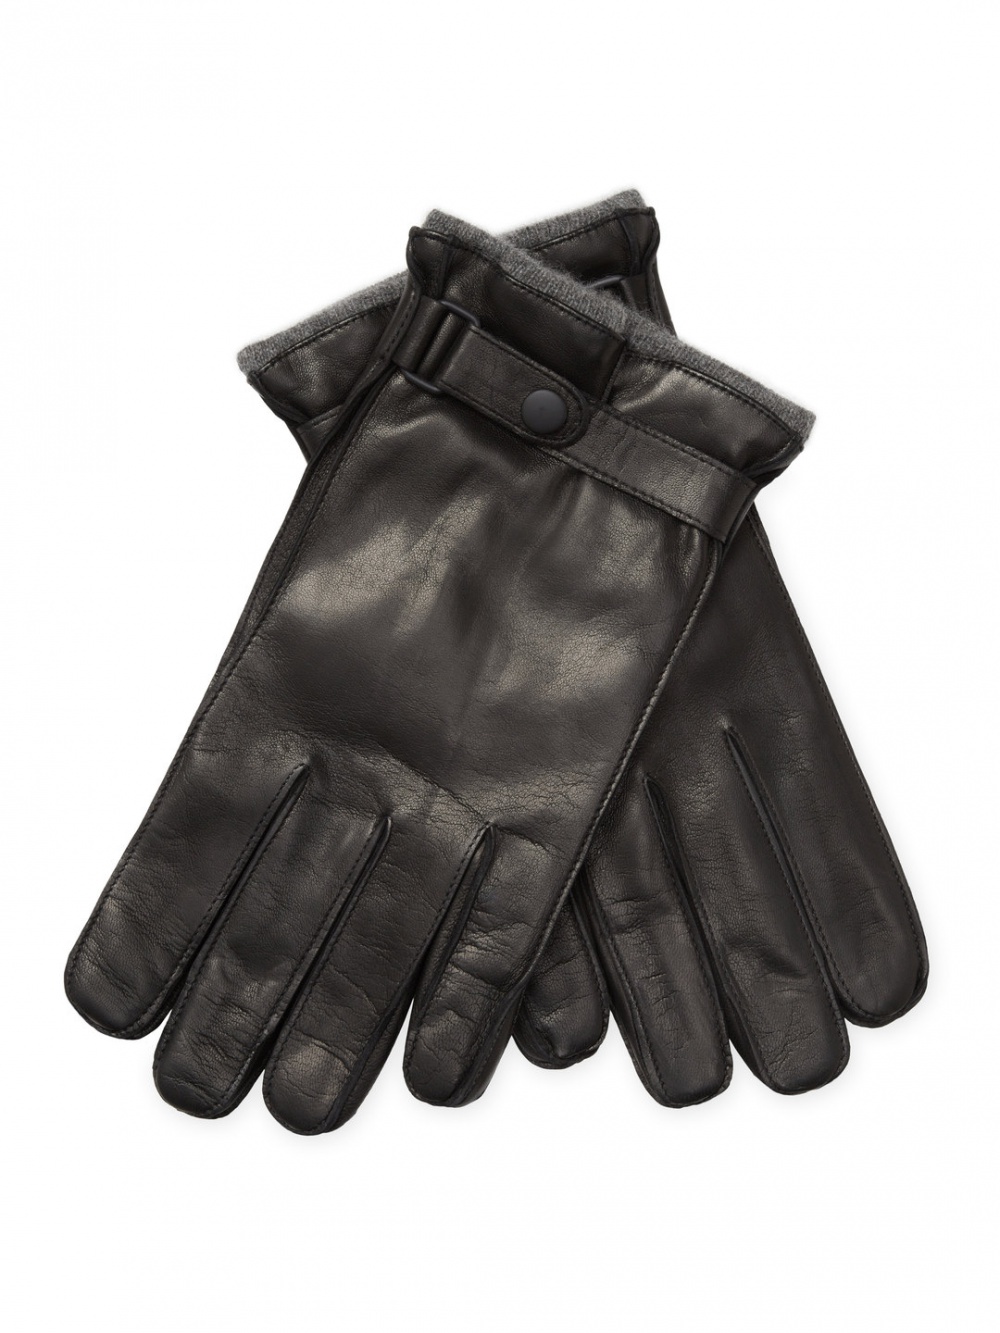 Мужские кожаные перчатки на кашемире Portolano,  размер М